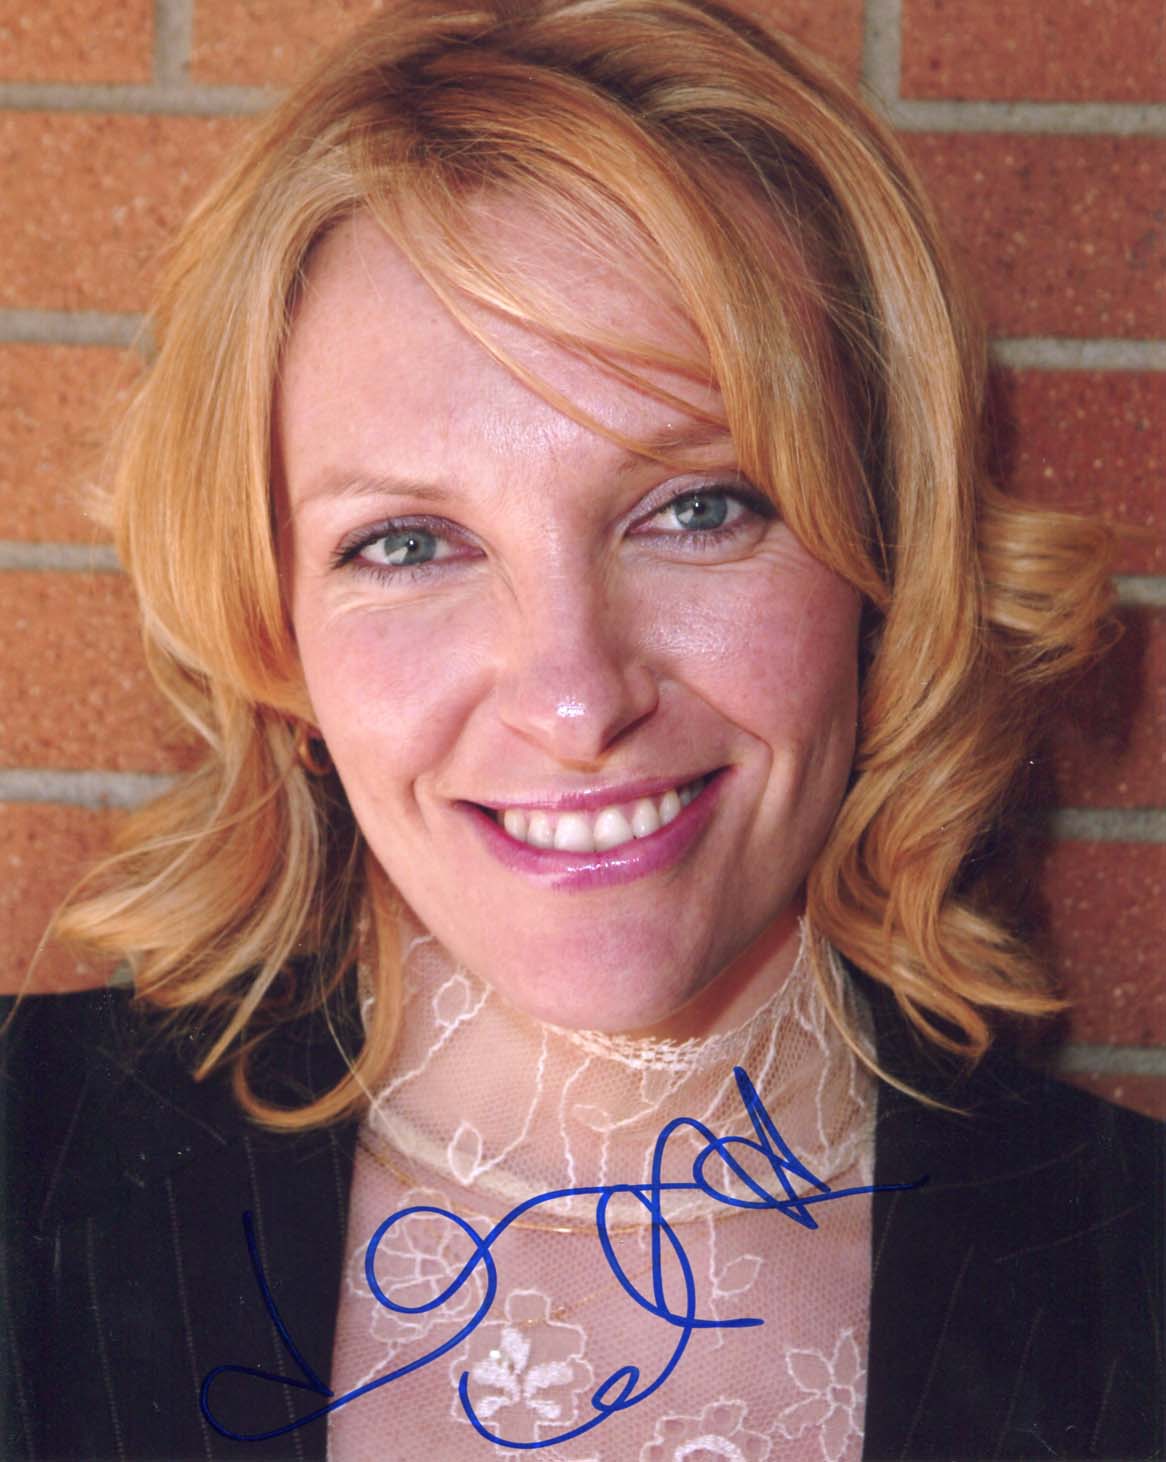 Toni  Collette Autograph Autogramm | ID 7881200533653